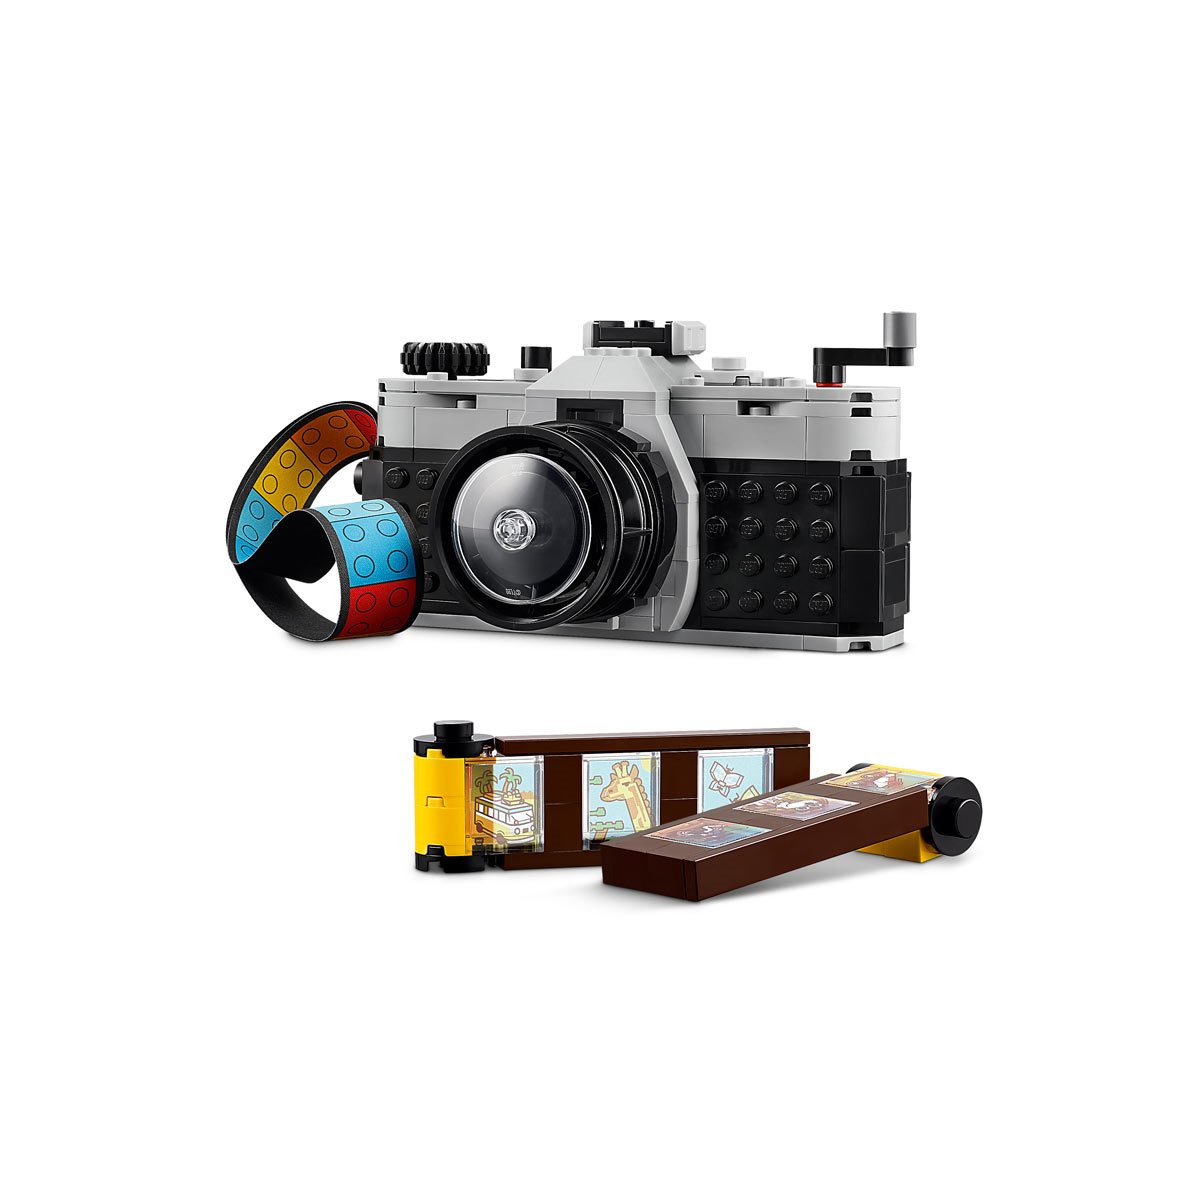 LEGO 31147 Creator 3-in-1 Retro Camera - Entertainment Earth